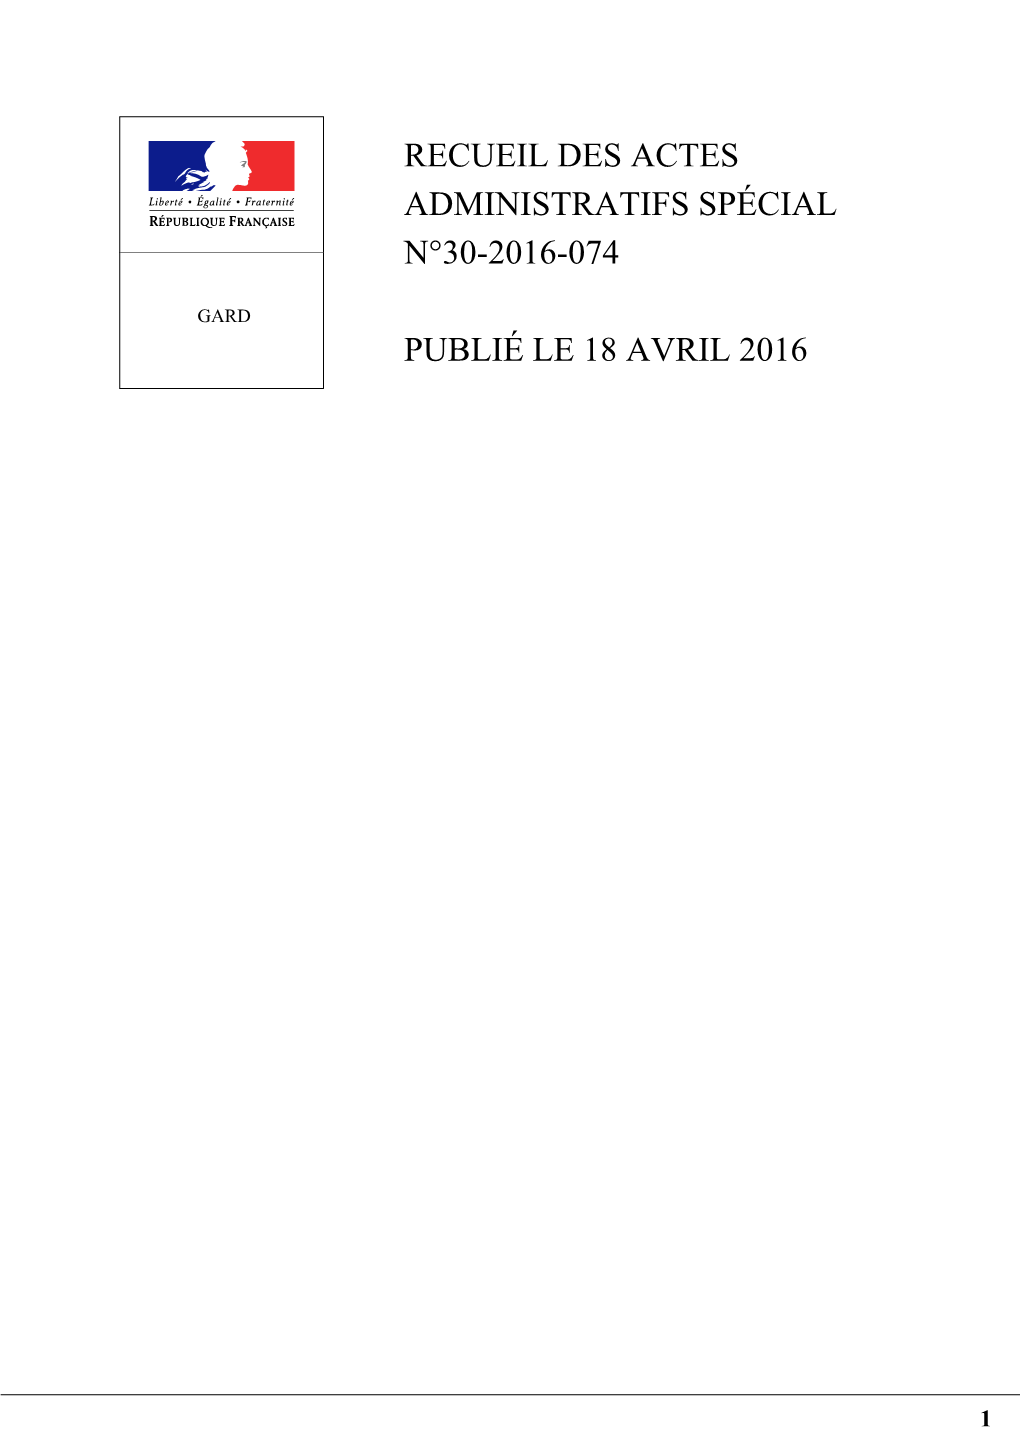 Recueil Des Actes Administratifs Spécial N°30-2016-074 Publié Le 18 Avril